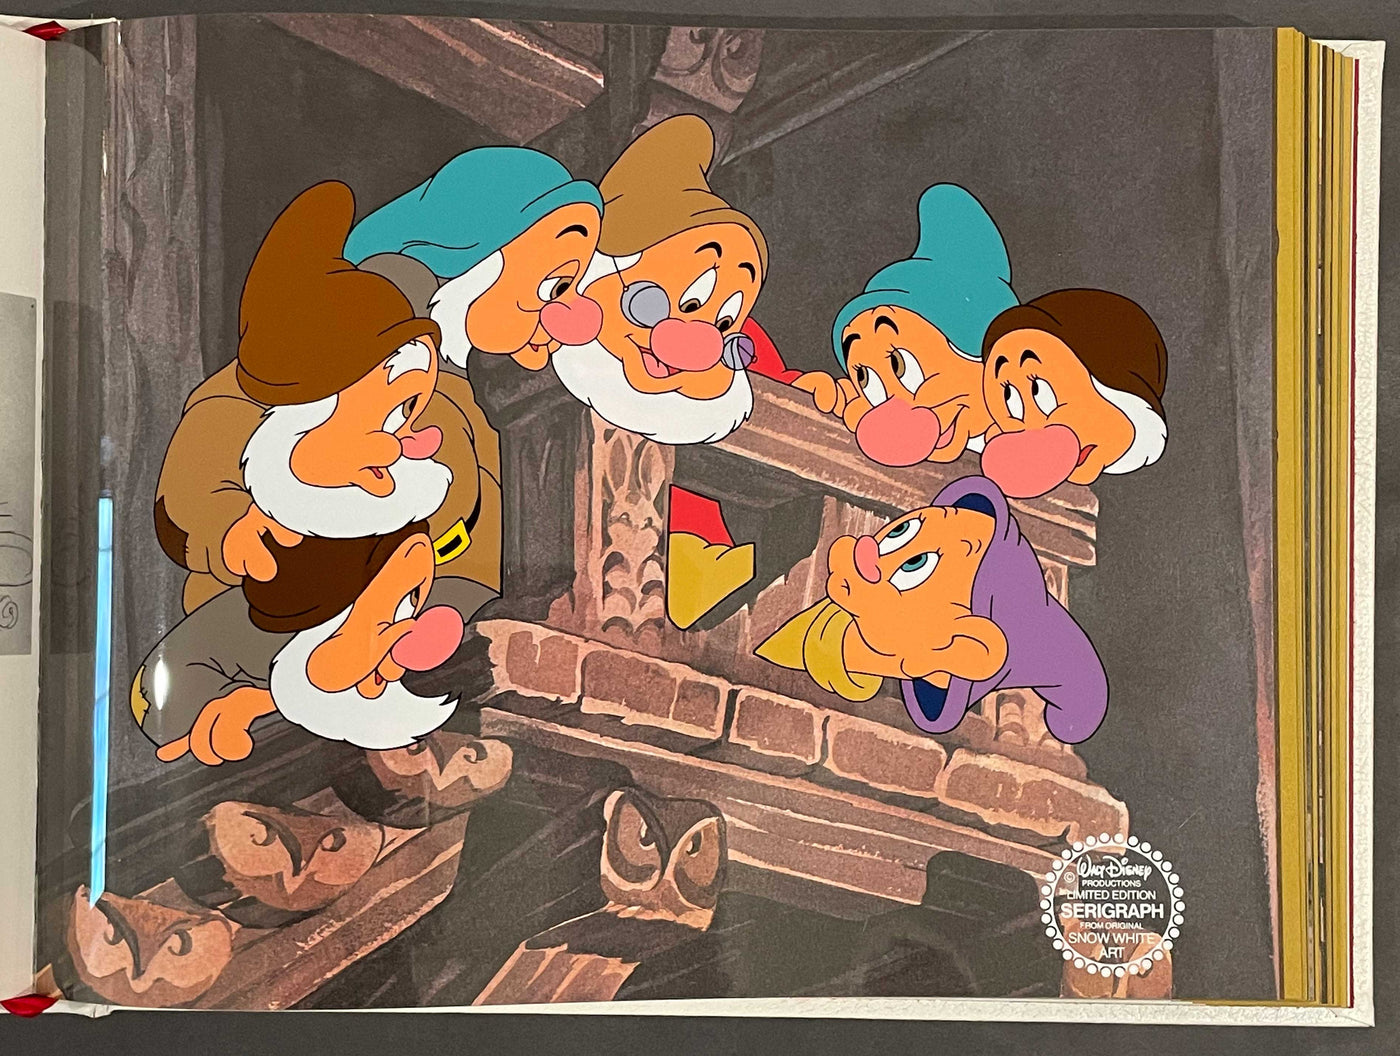 Original Walt Disney's Snow White and the Seven Dwarfs Book with Four Original Color Serigraphs